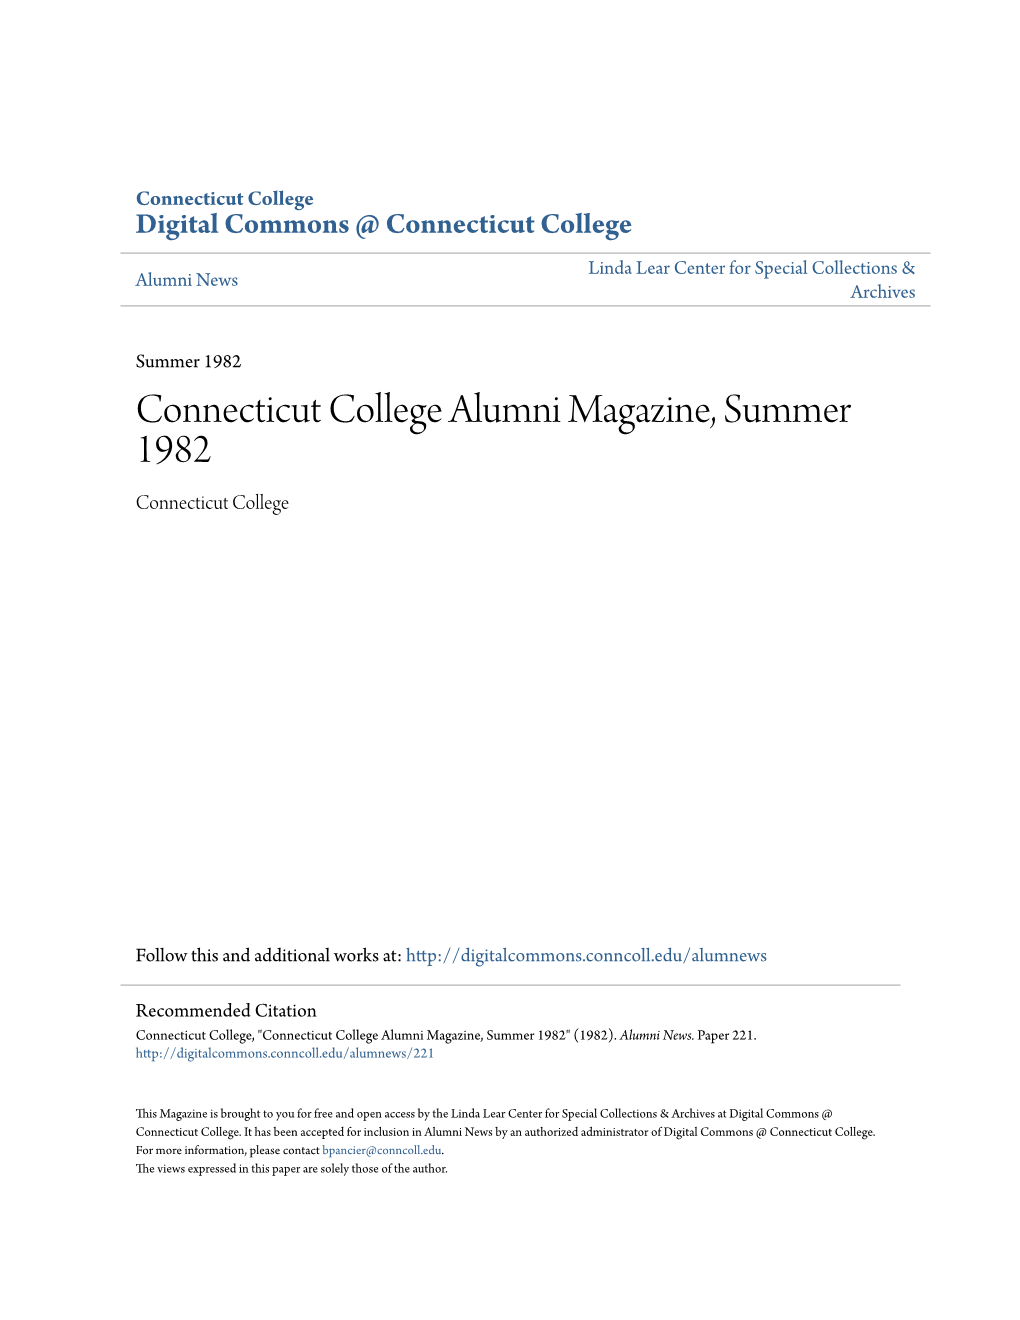 Connecticut College Alumni Magazine, Summer 1982 Connecticut College